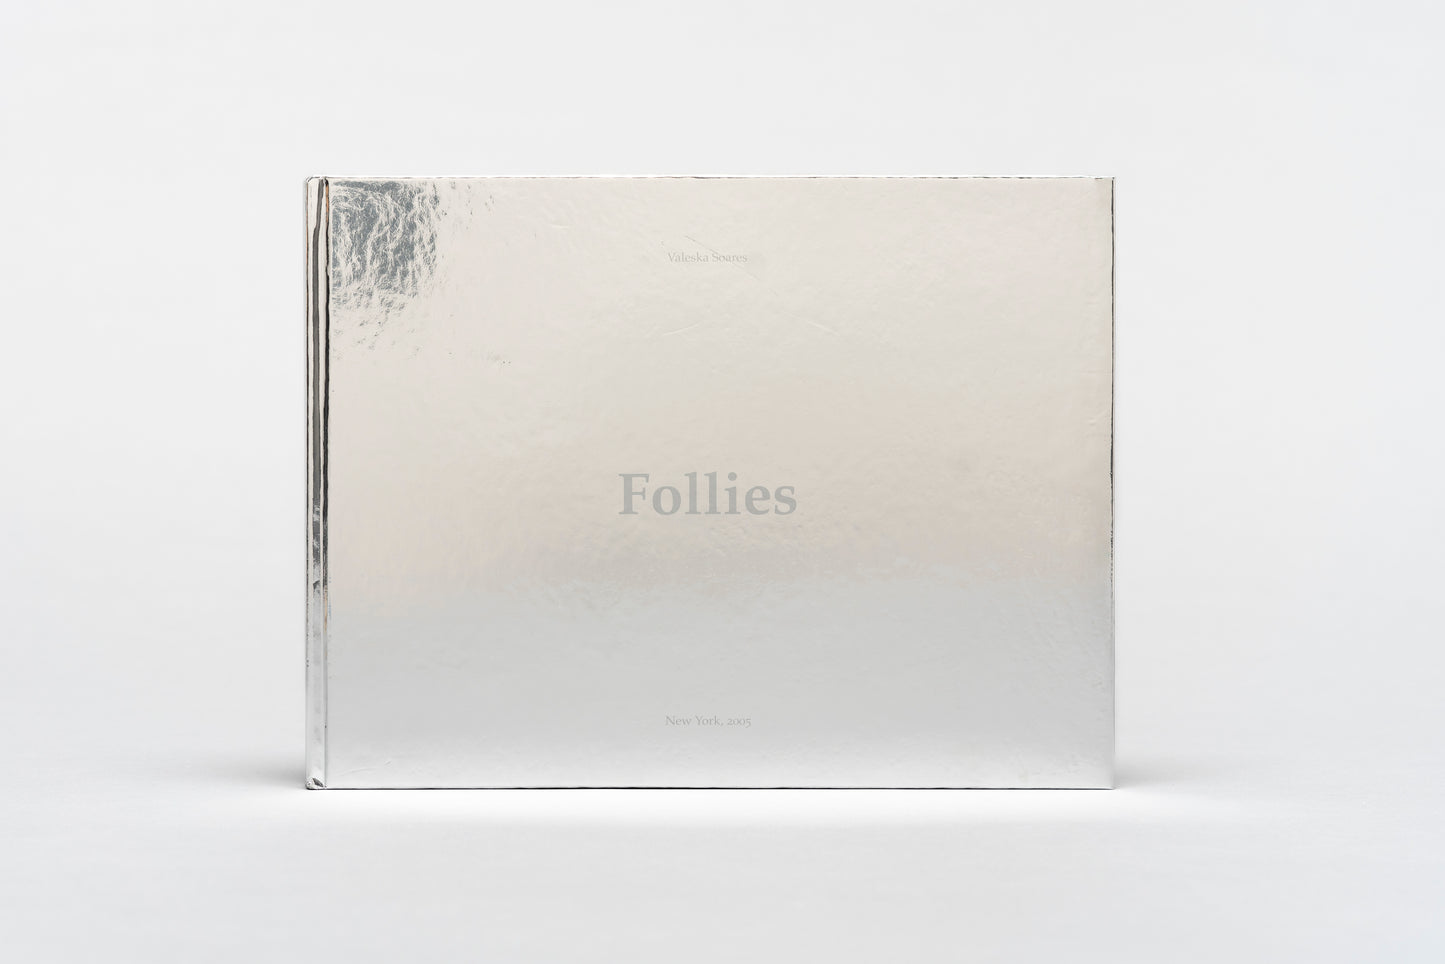 follies/whims